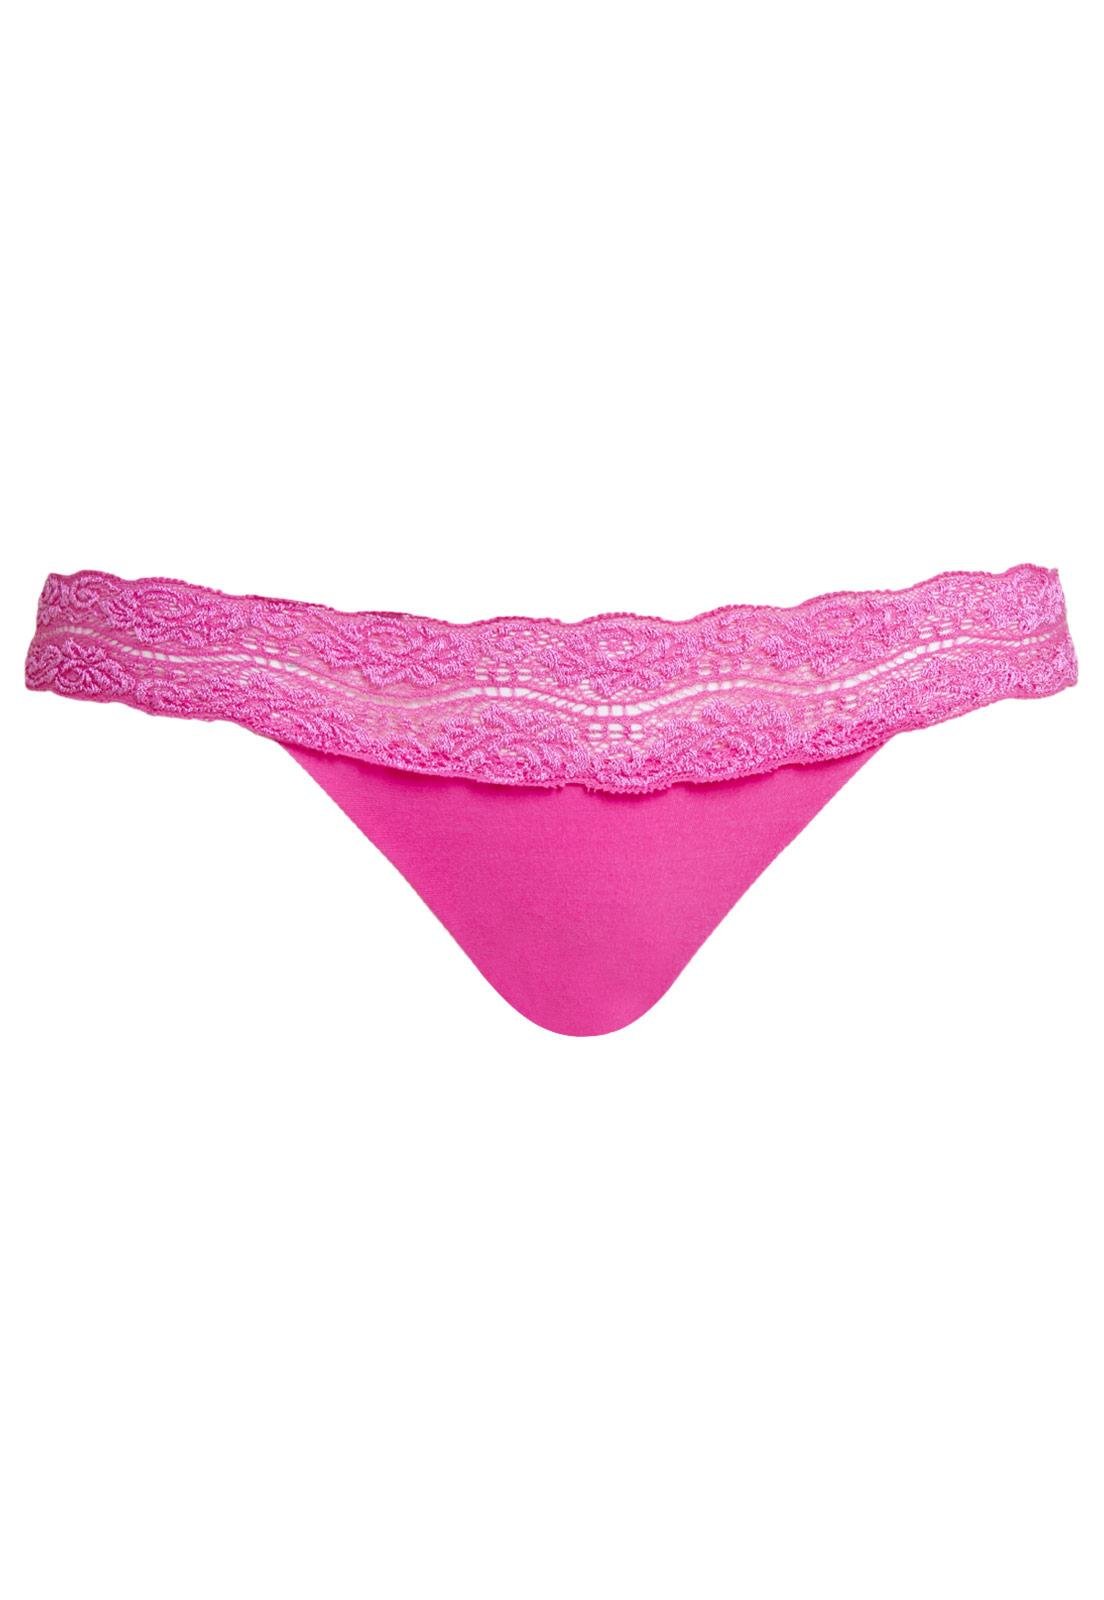 Resultado de búsqueda - Rosa en Panties - Tanga Victoria's Secret